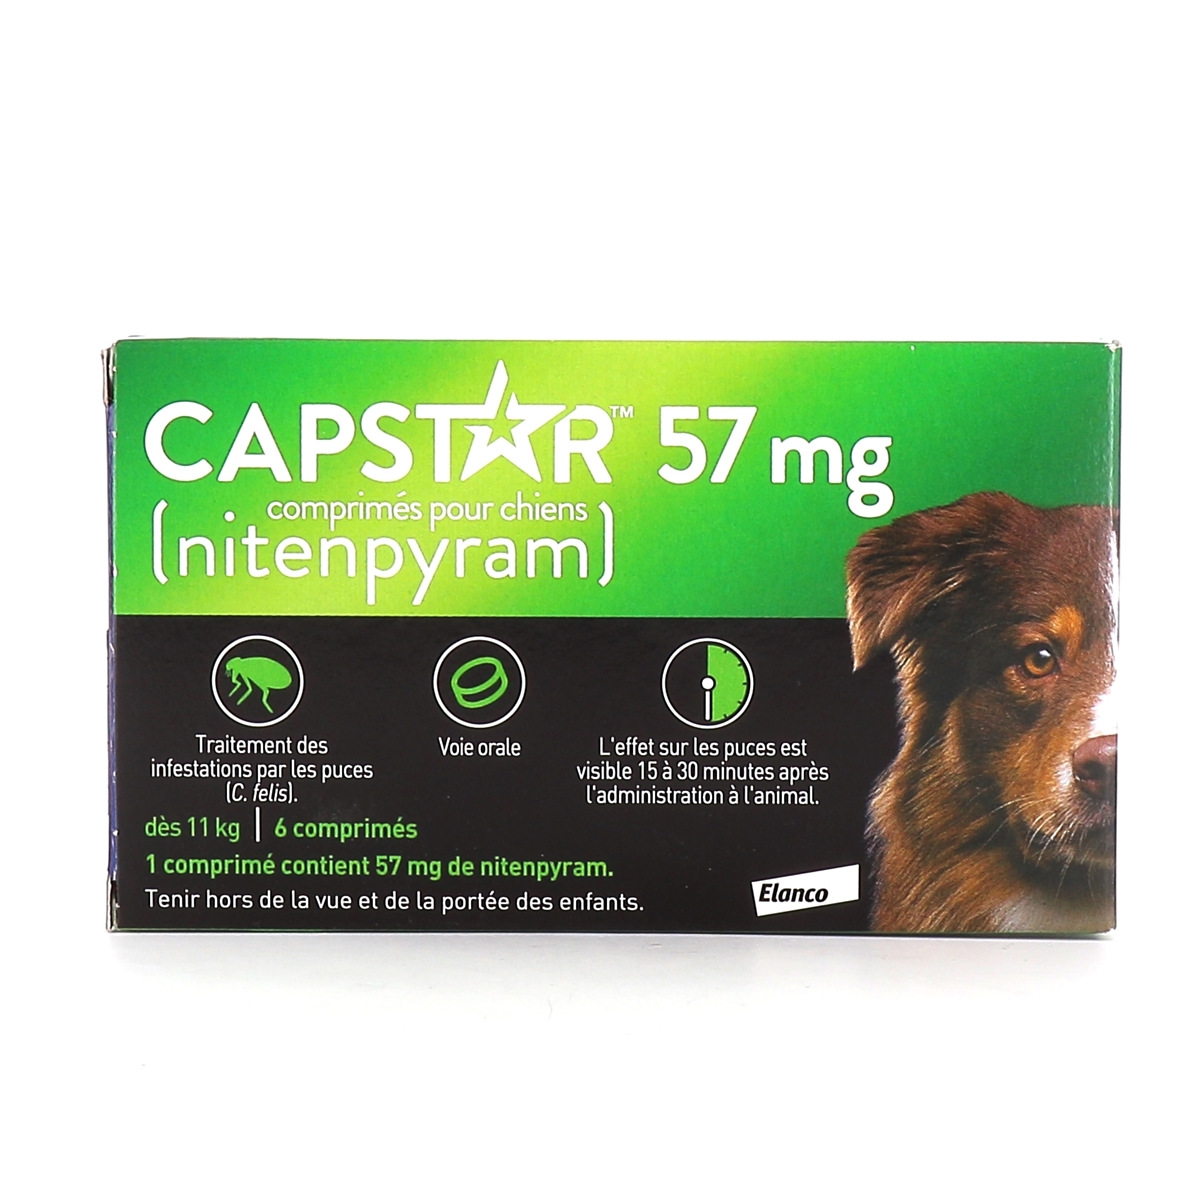 Capstar Chat 11,4 mg comprimés - Traitement anti puces efficace